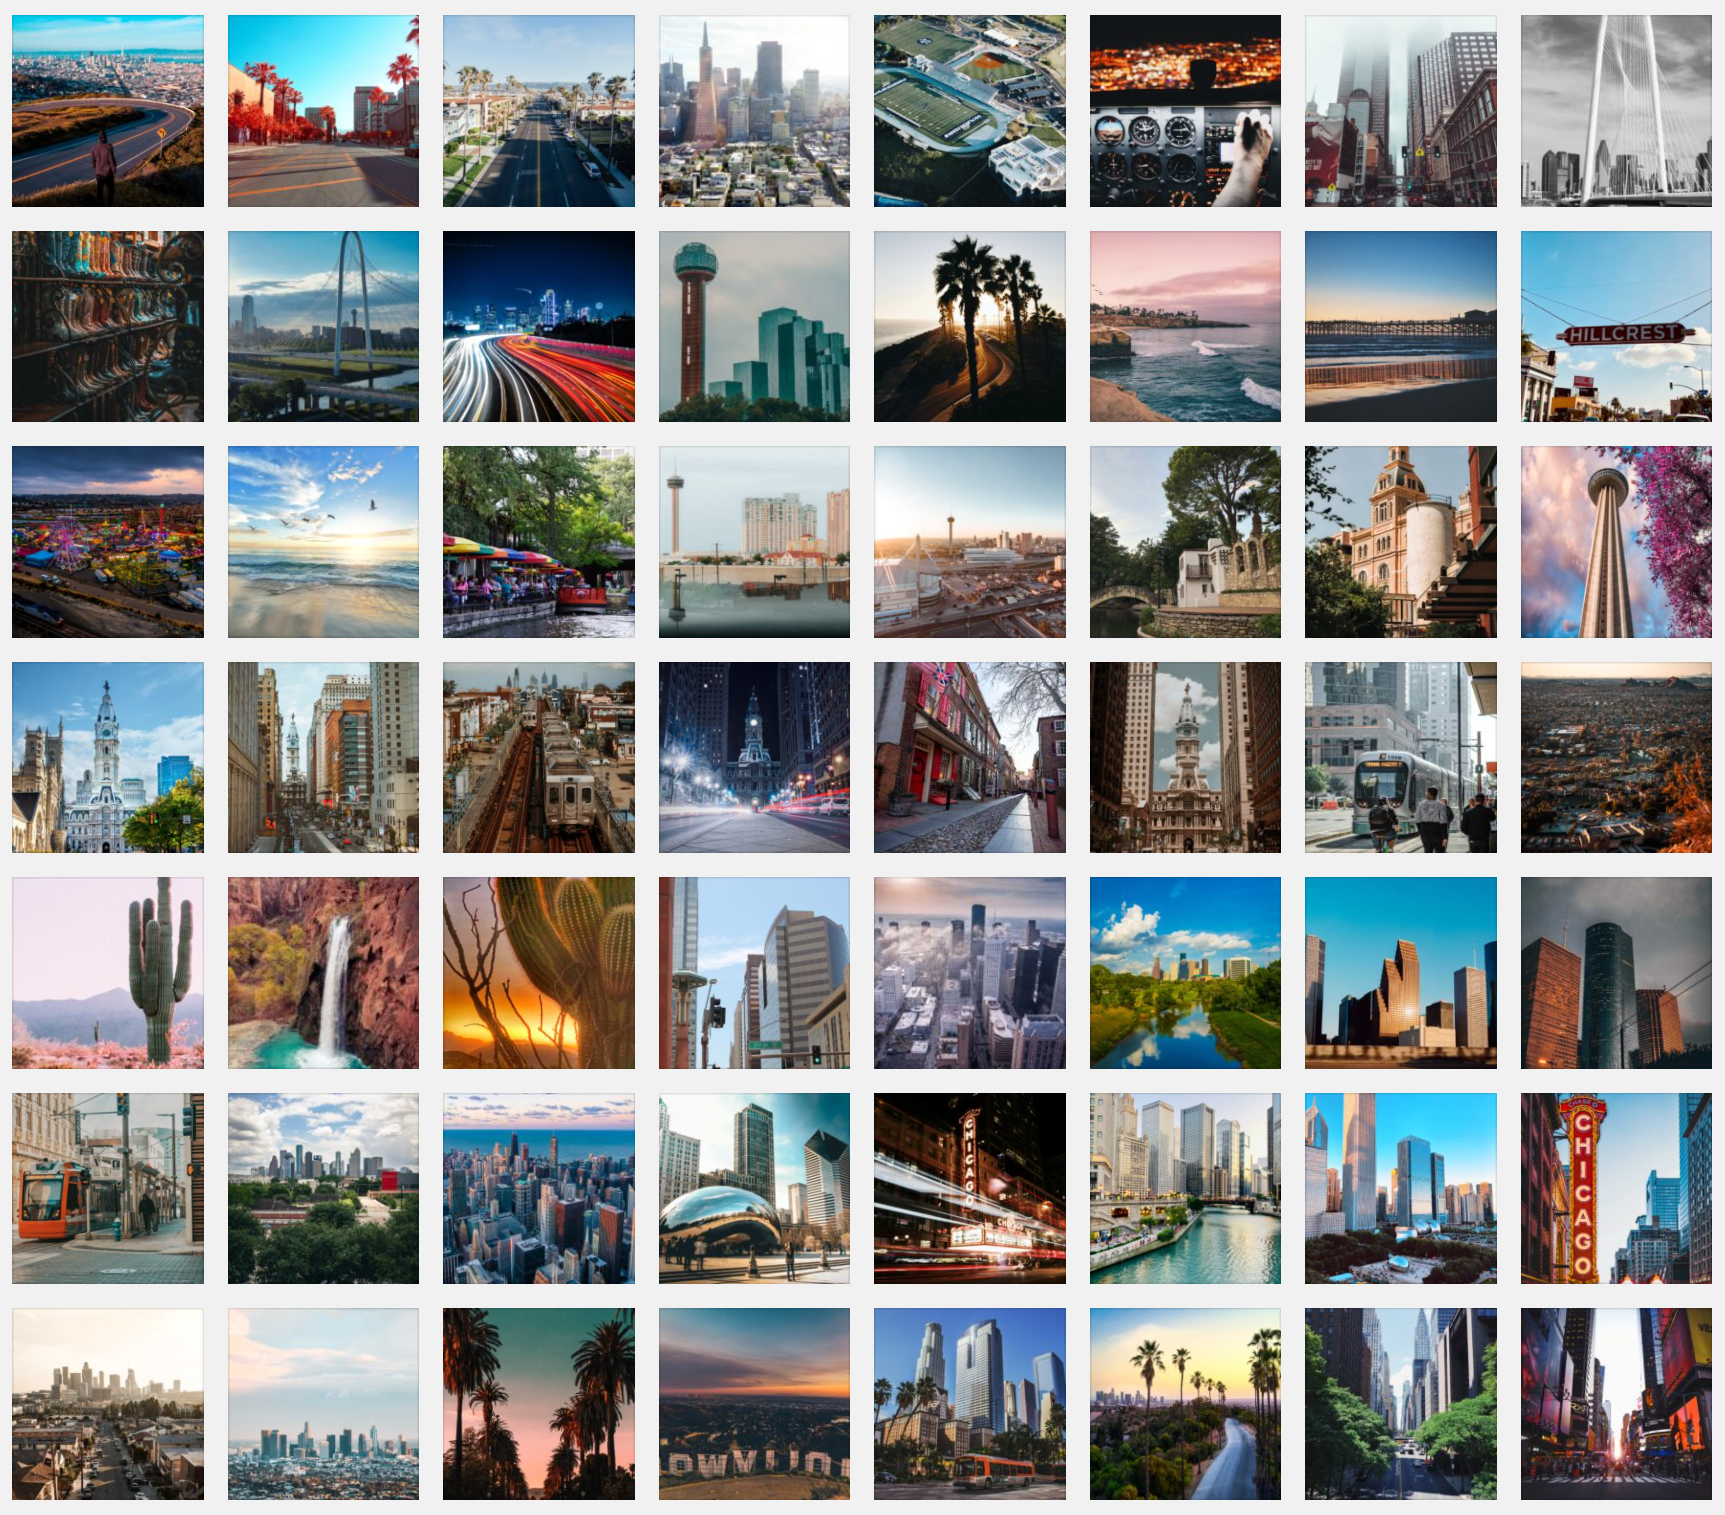 Estas son las 10 ciudades americanas más bonitas para poner como fondo Teams